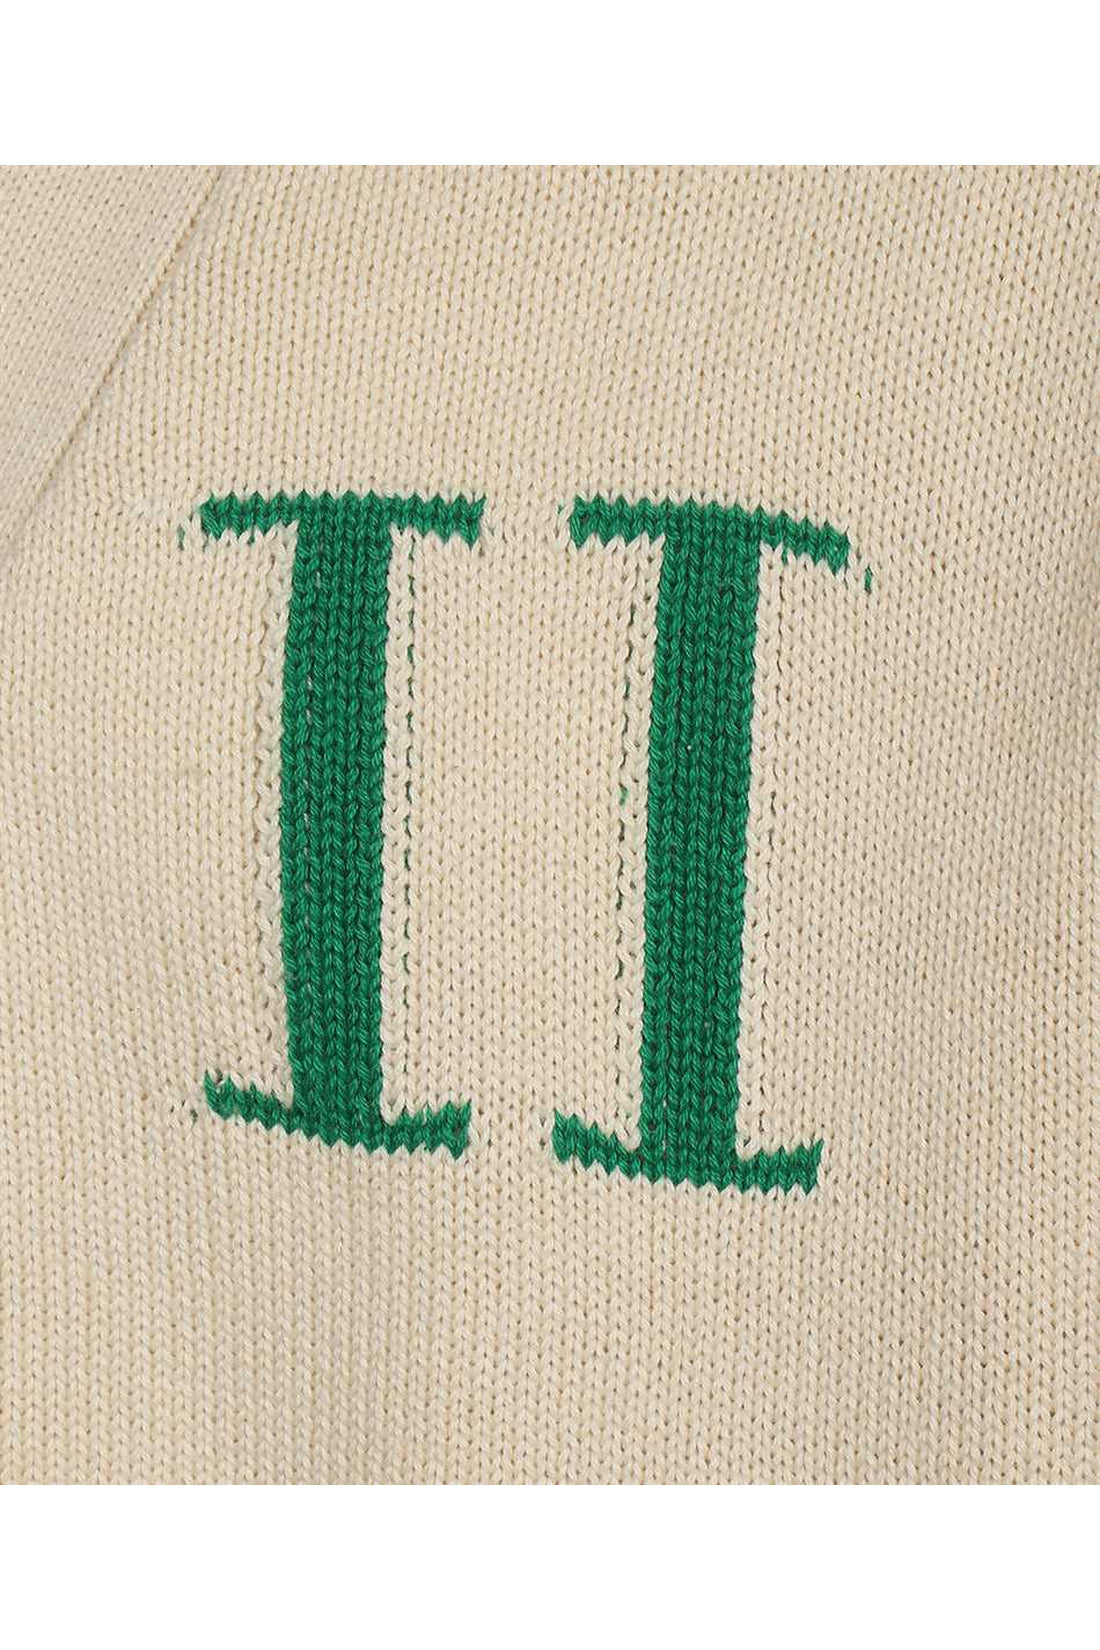 Les Deux-OUTLET-SALE-Logo detail cotton cardigan-ARCHIVIST